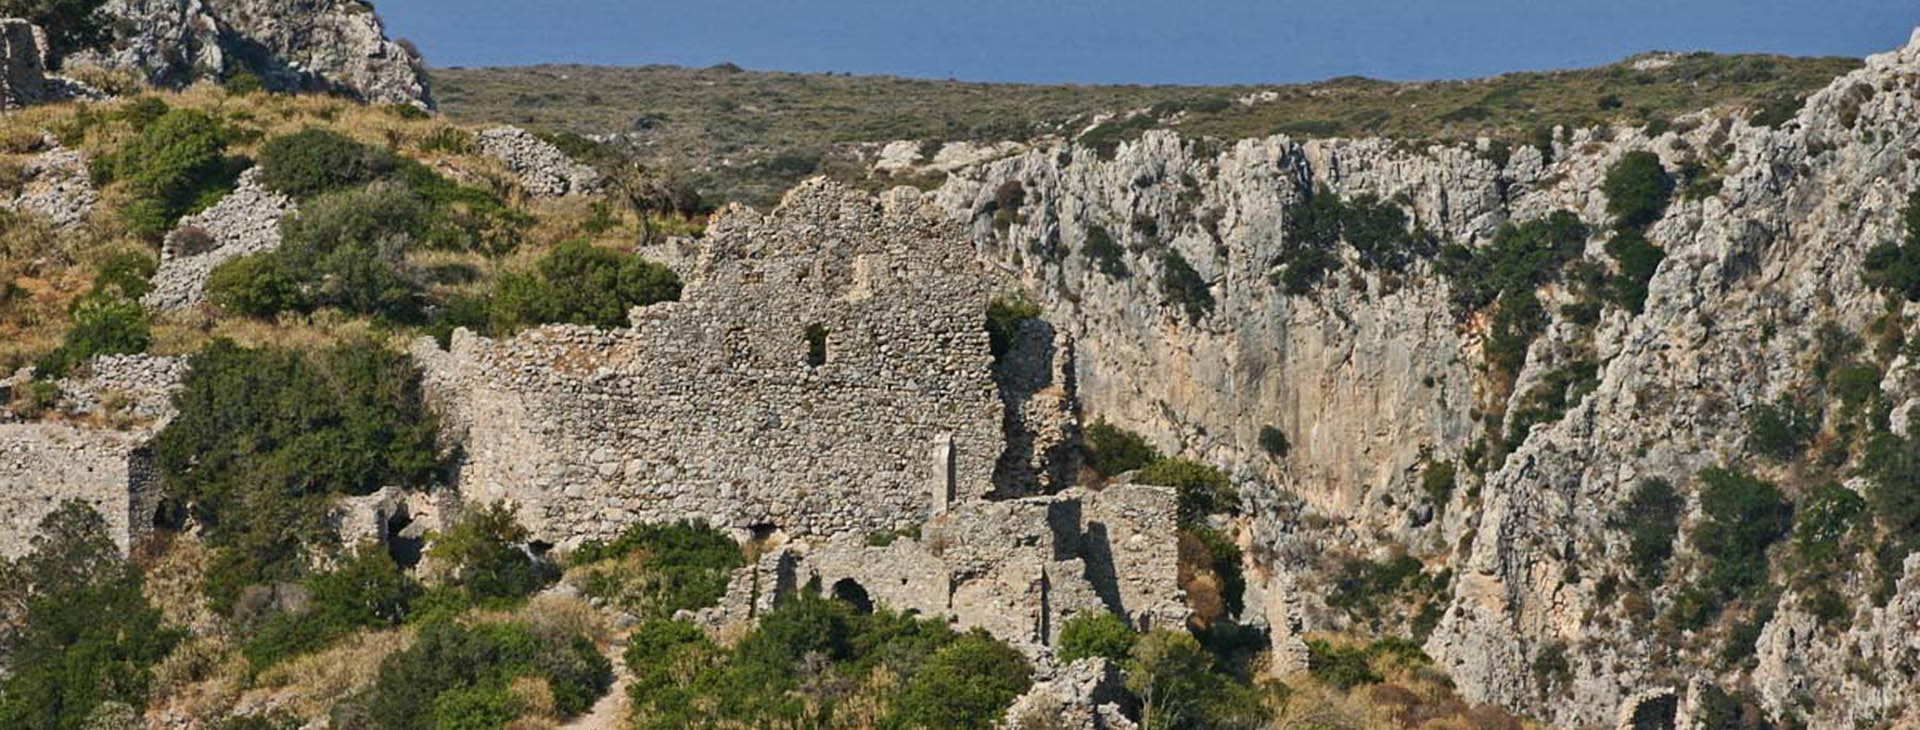 Medieval ruins at Palaiohora, Kythira island